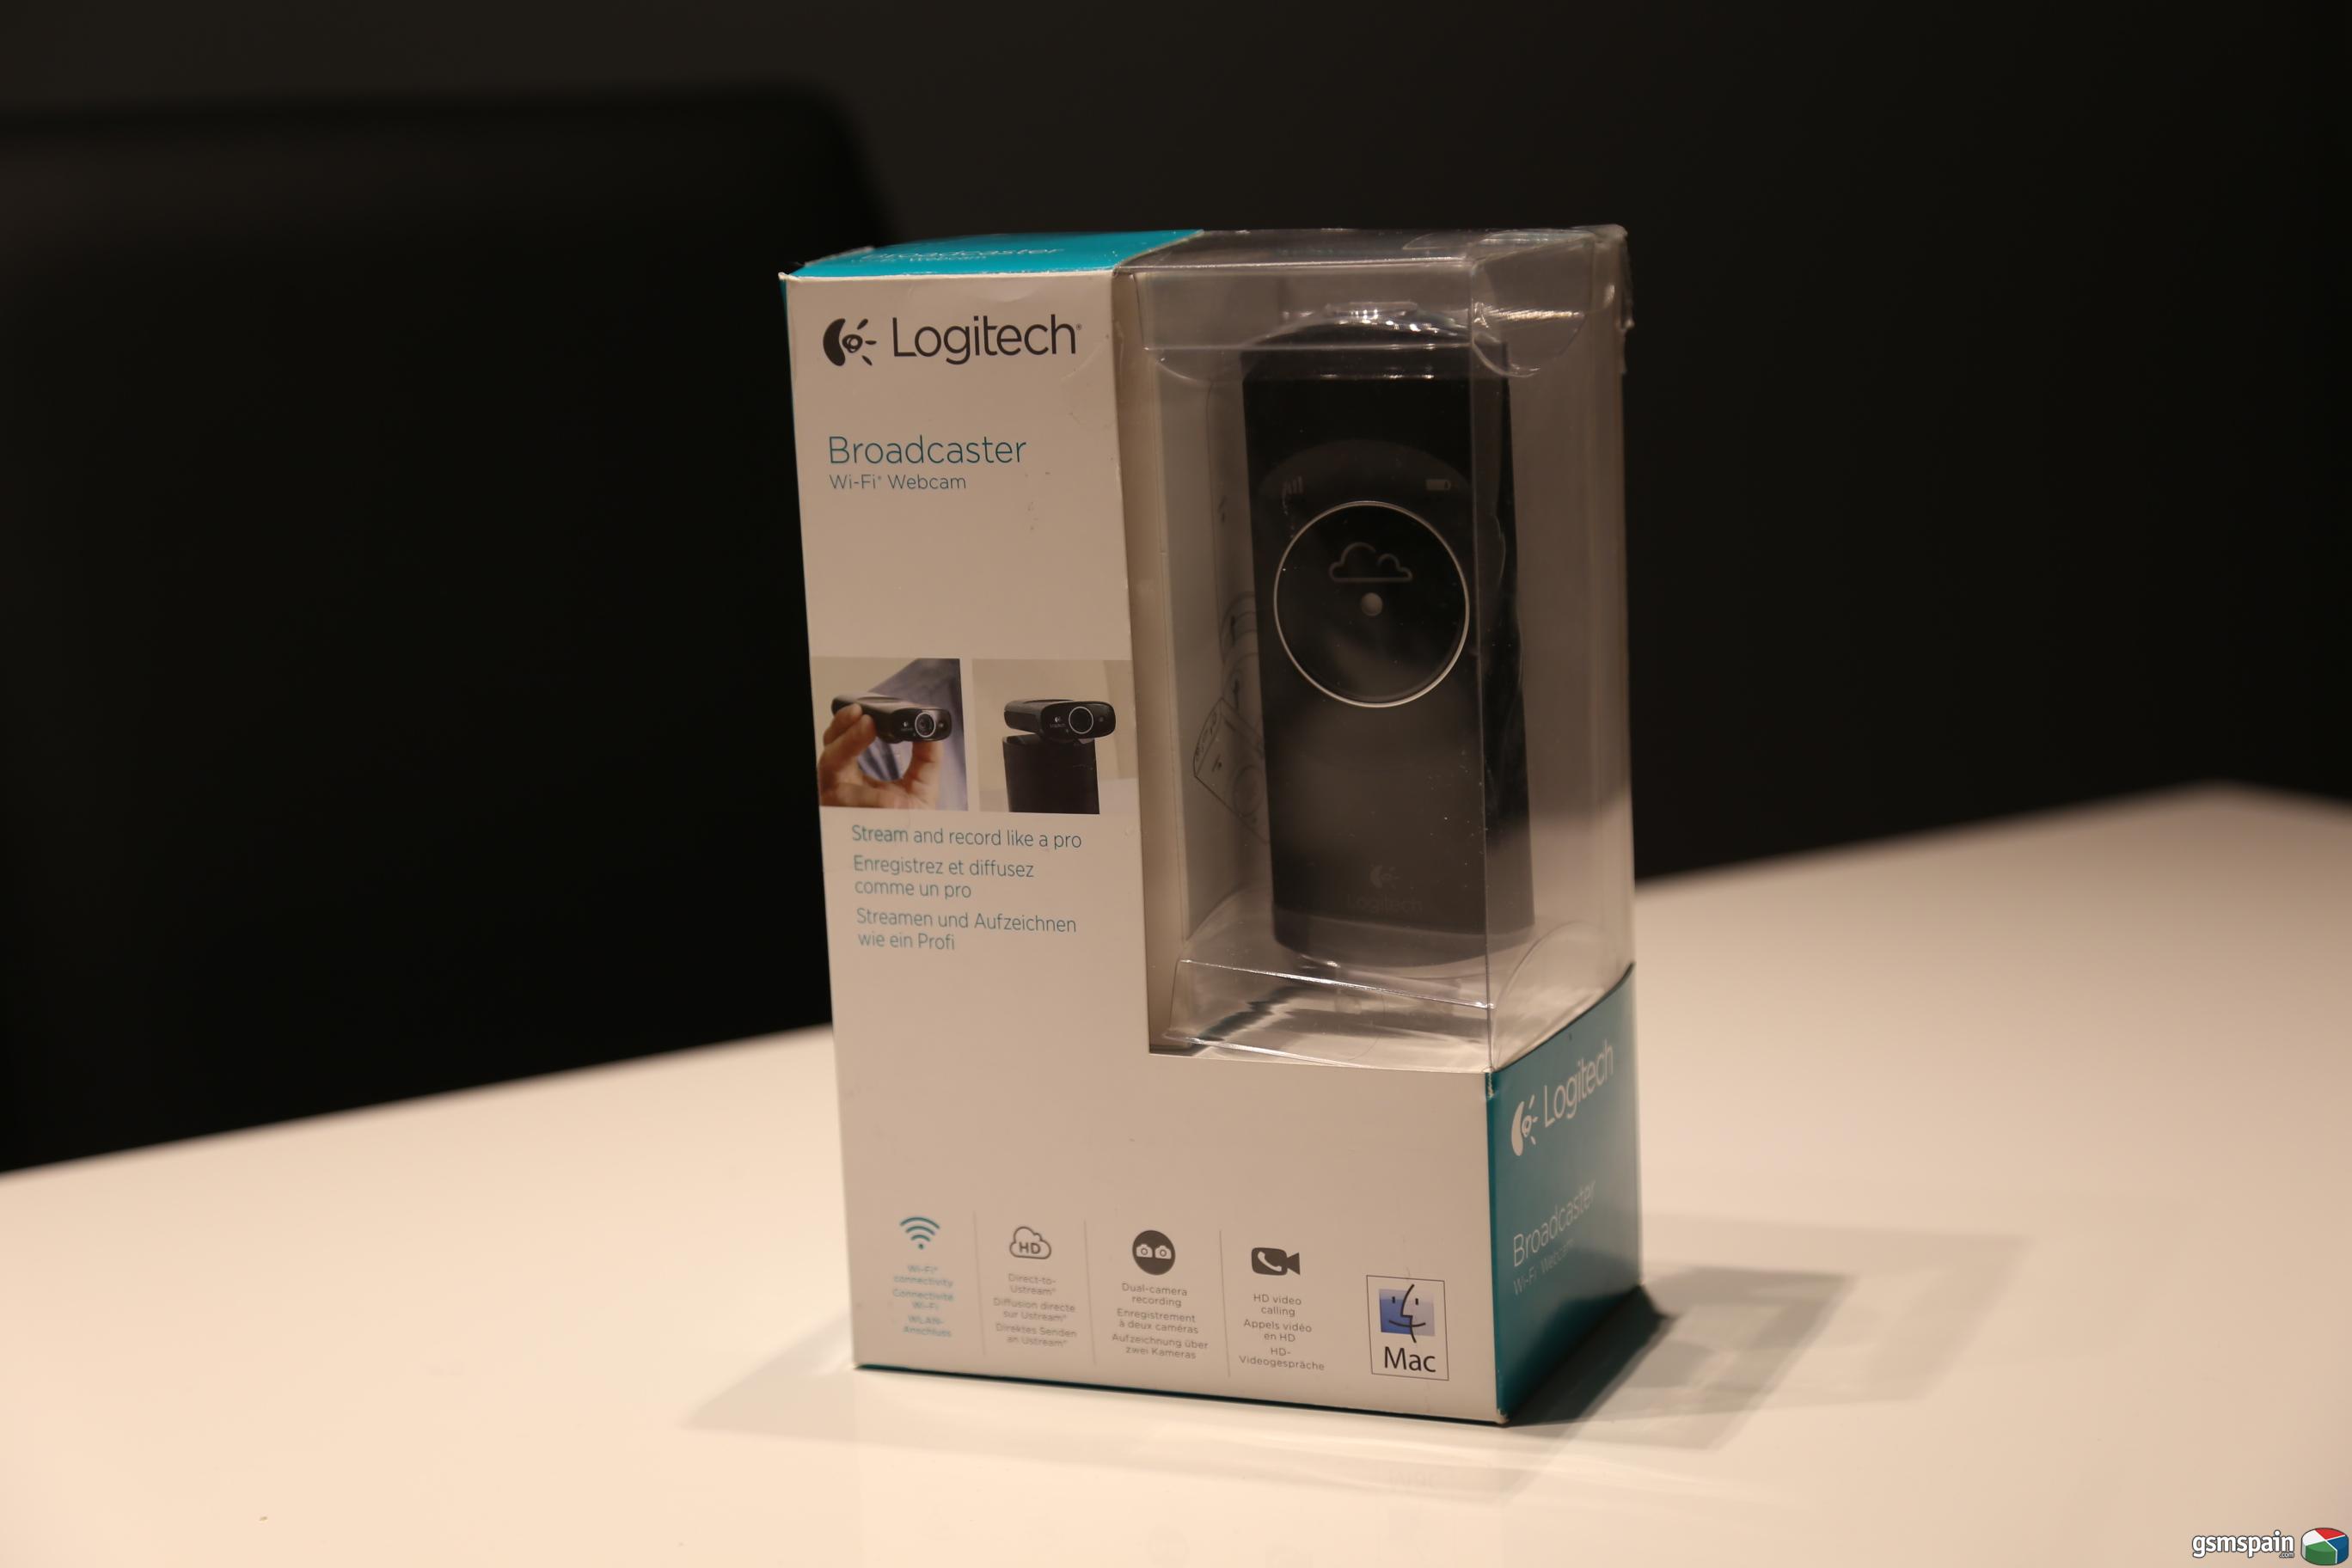 [VENDO] Webcam WiFi Logitech Broadcaster (para Mac)